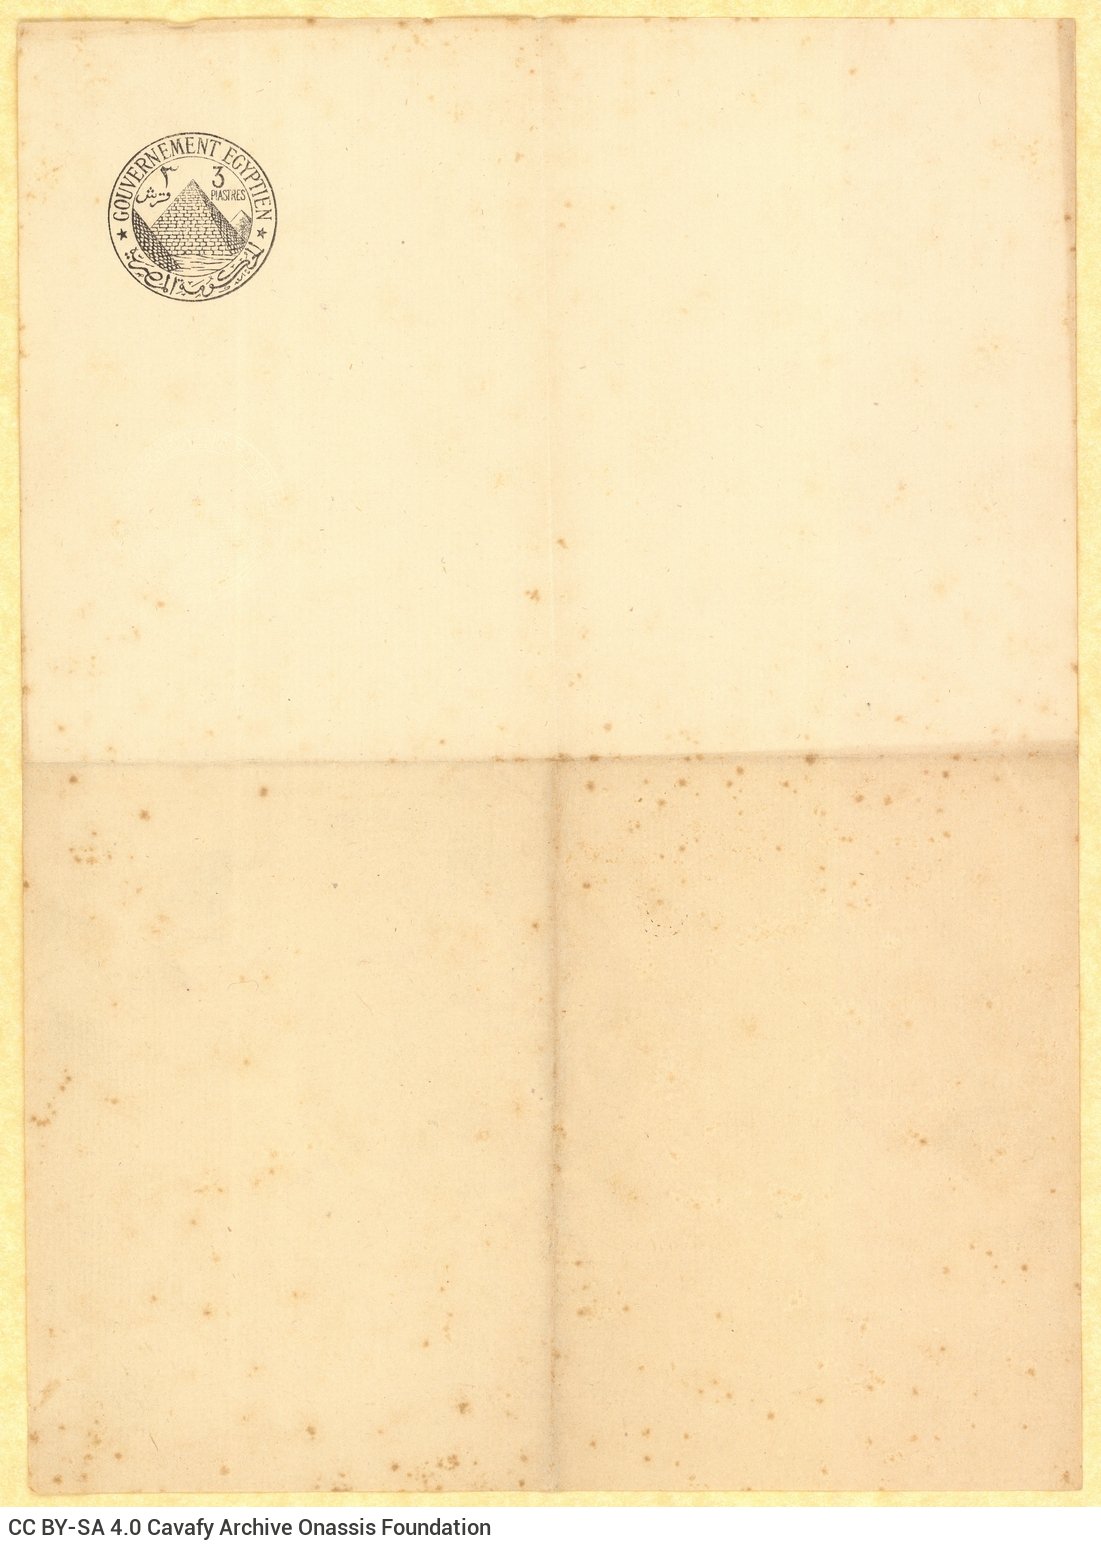 Τετρασέλιδο επιστολόχαρτο με ανάγλυφο έντυπο λογότυπο της αιγυπτ�